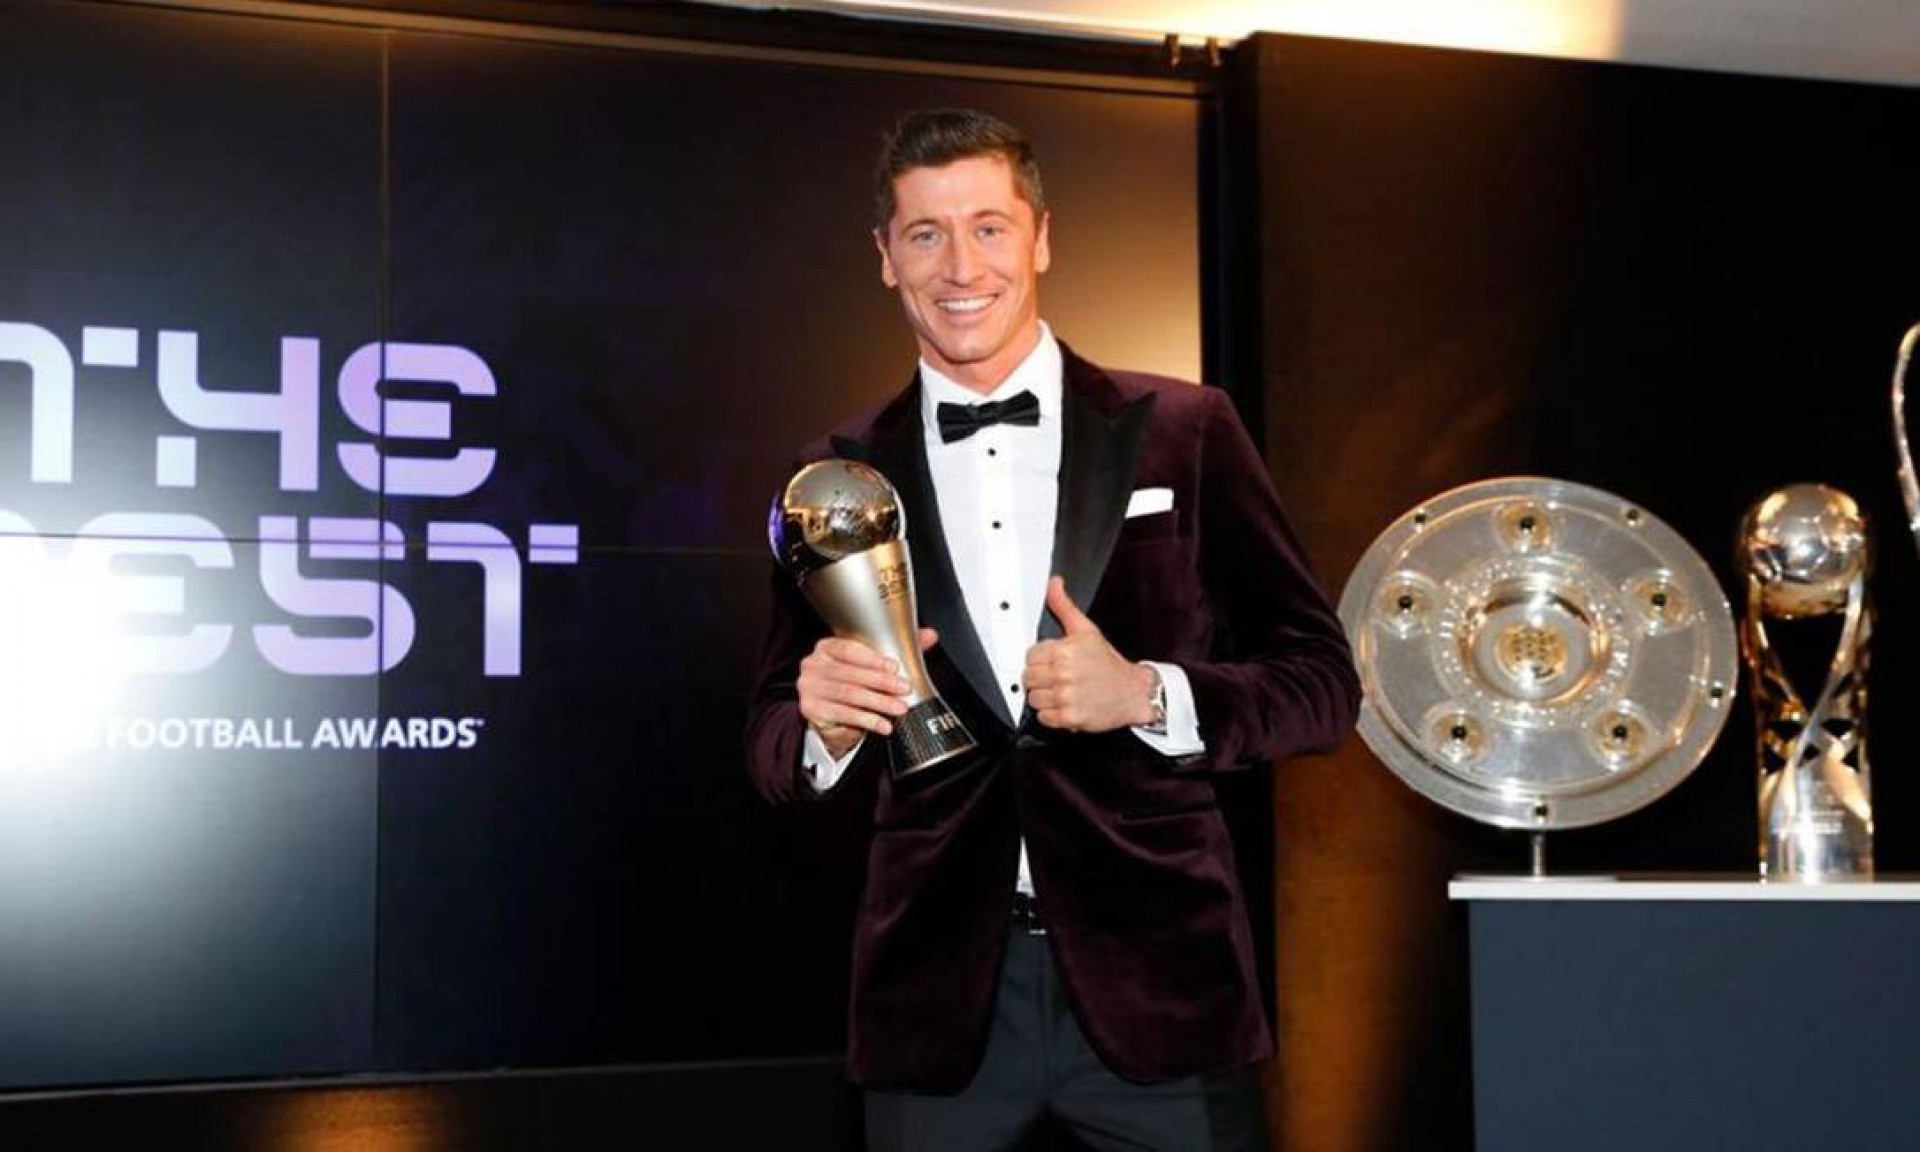 Robert Lewandowski recebeu o prêmio de melhor do mundo pelo segundo ano consecutivo  - Divulgação/FIFA